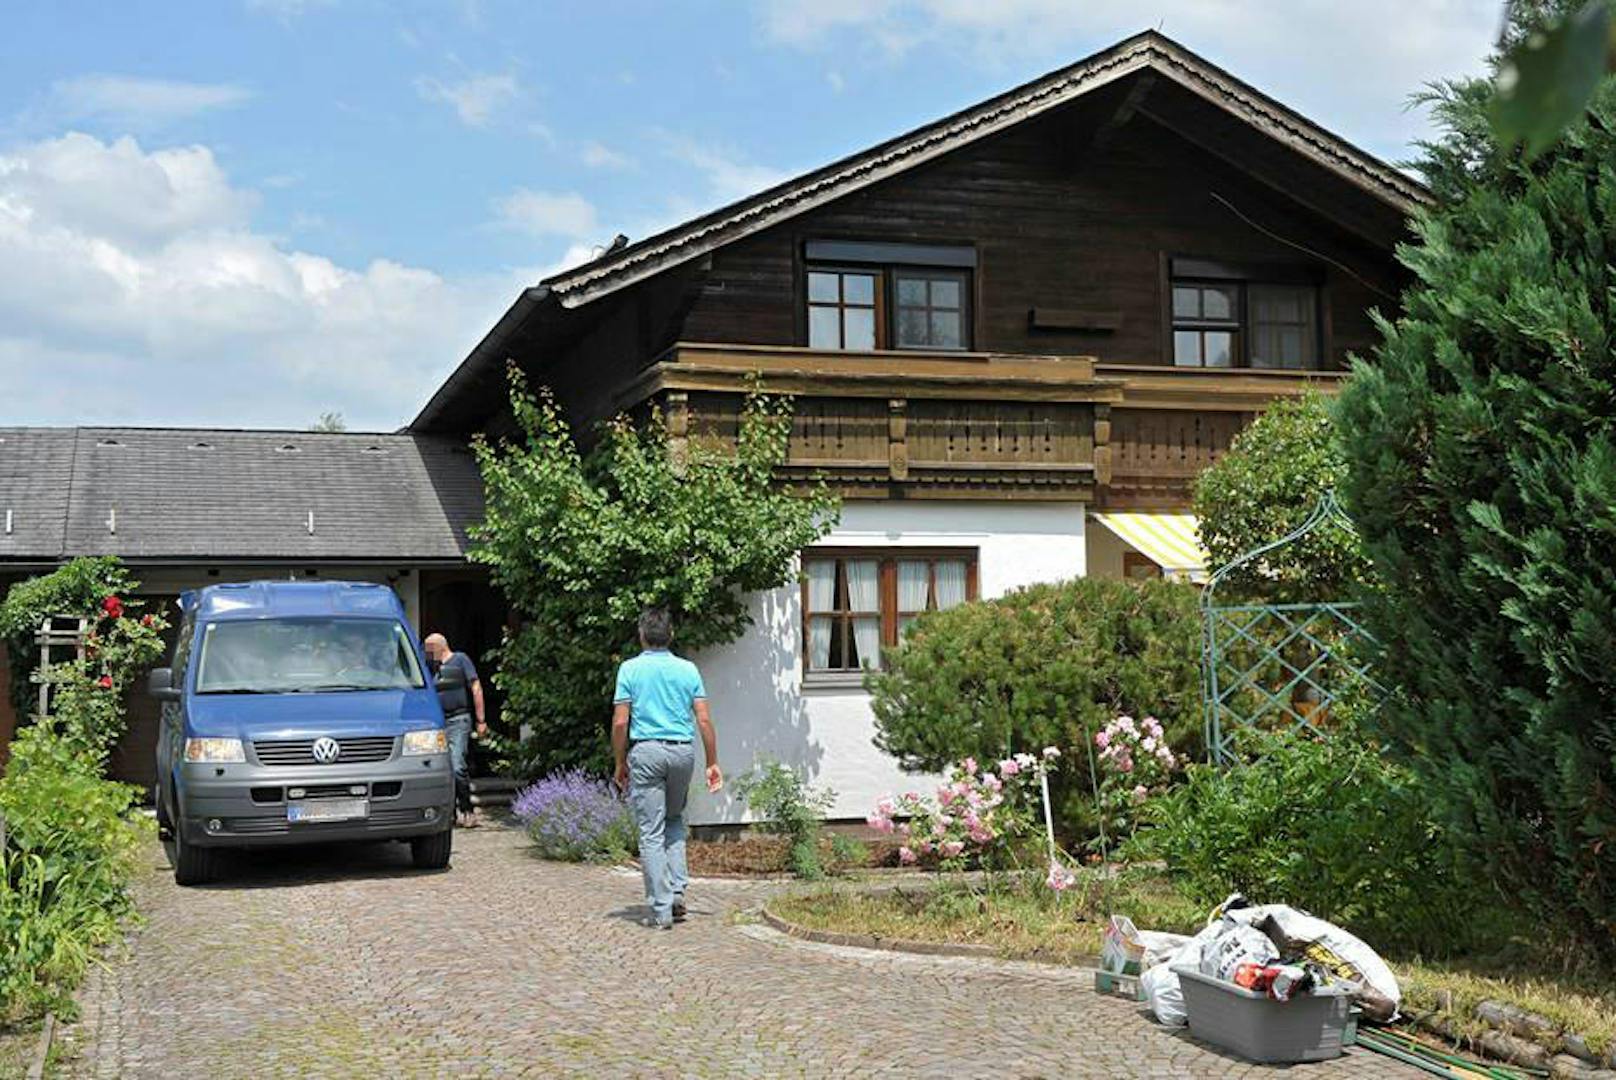 In der Garage dieses Einfamilienhauses in Mattsee wurde die Leiche des 73-Jährigen gefunden.